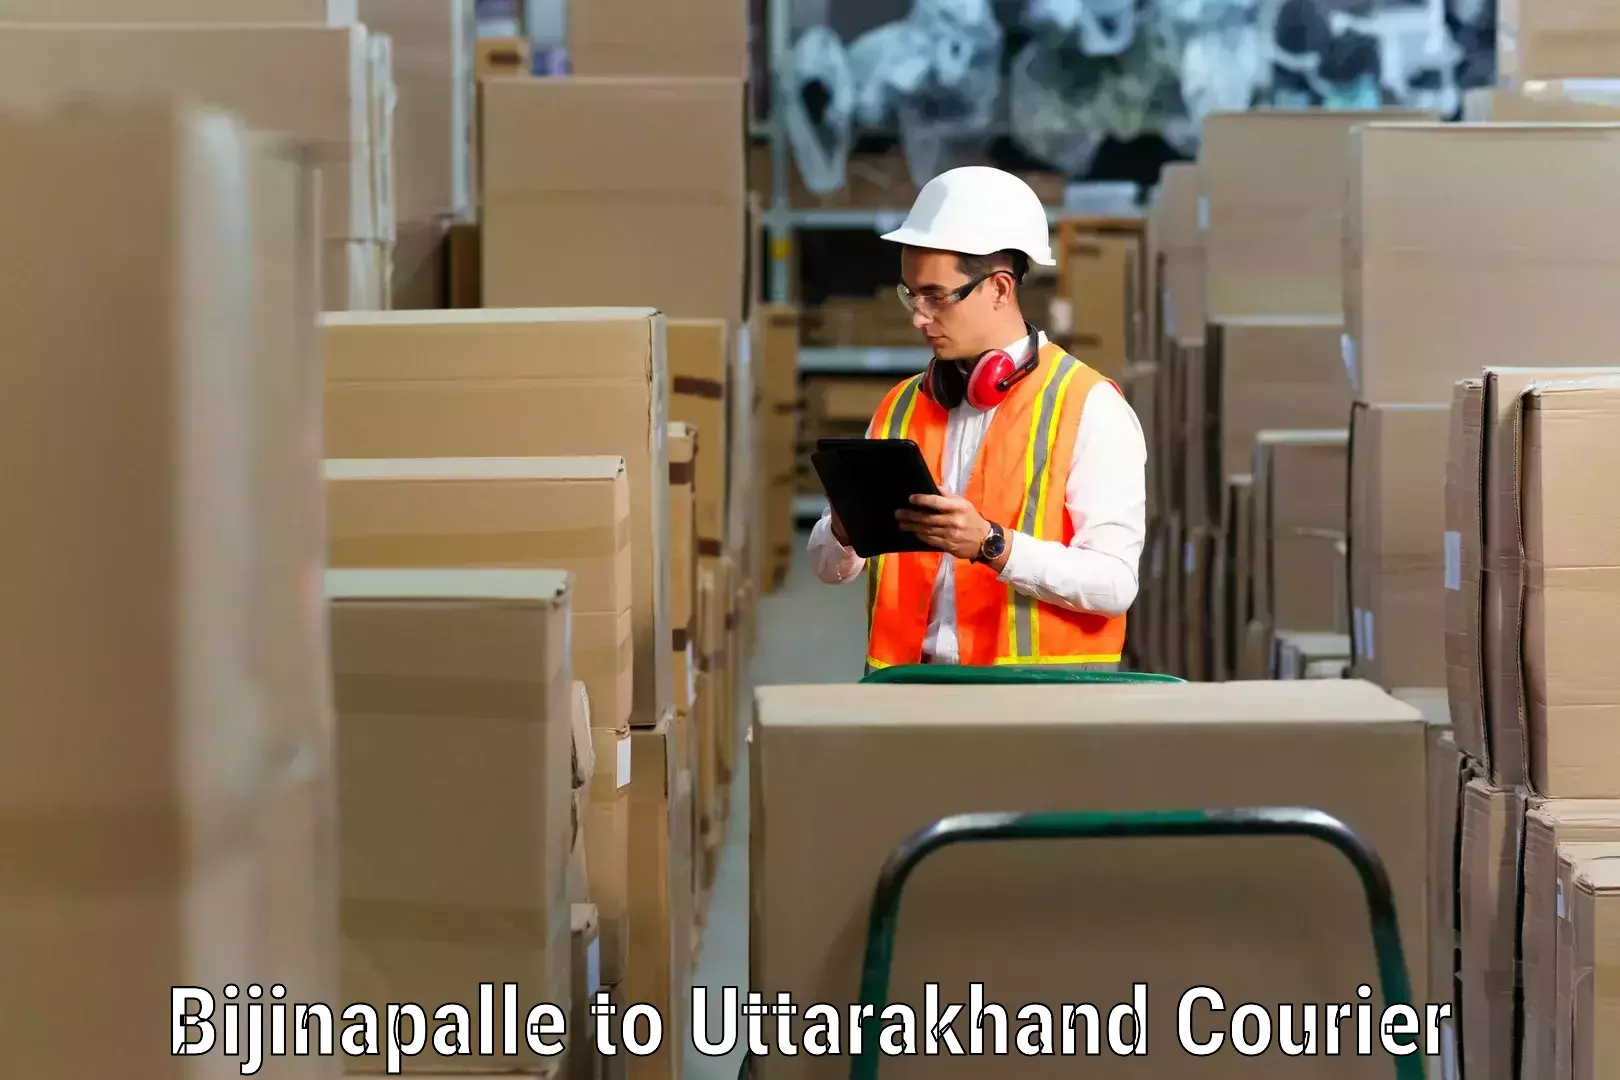 Household moving experts Bijinapalle to Uttarakhand